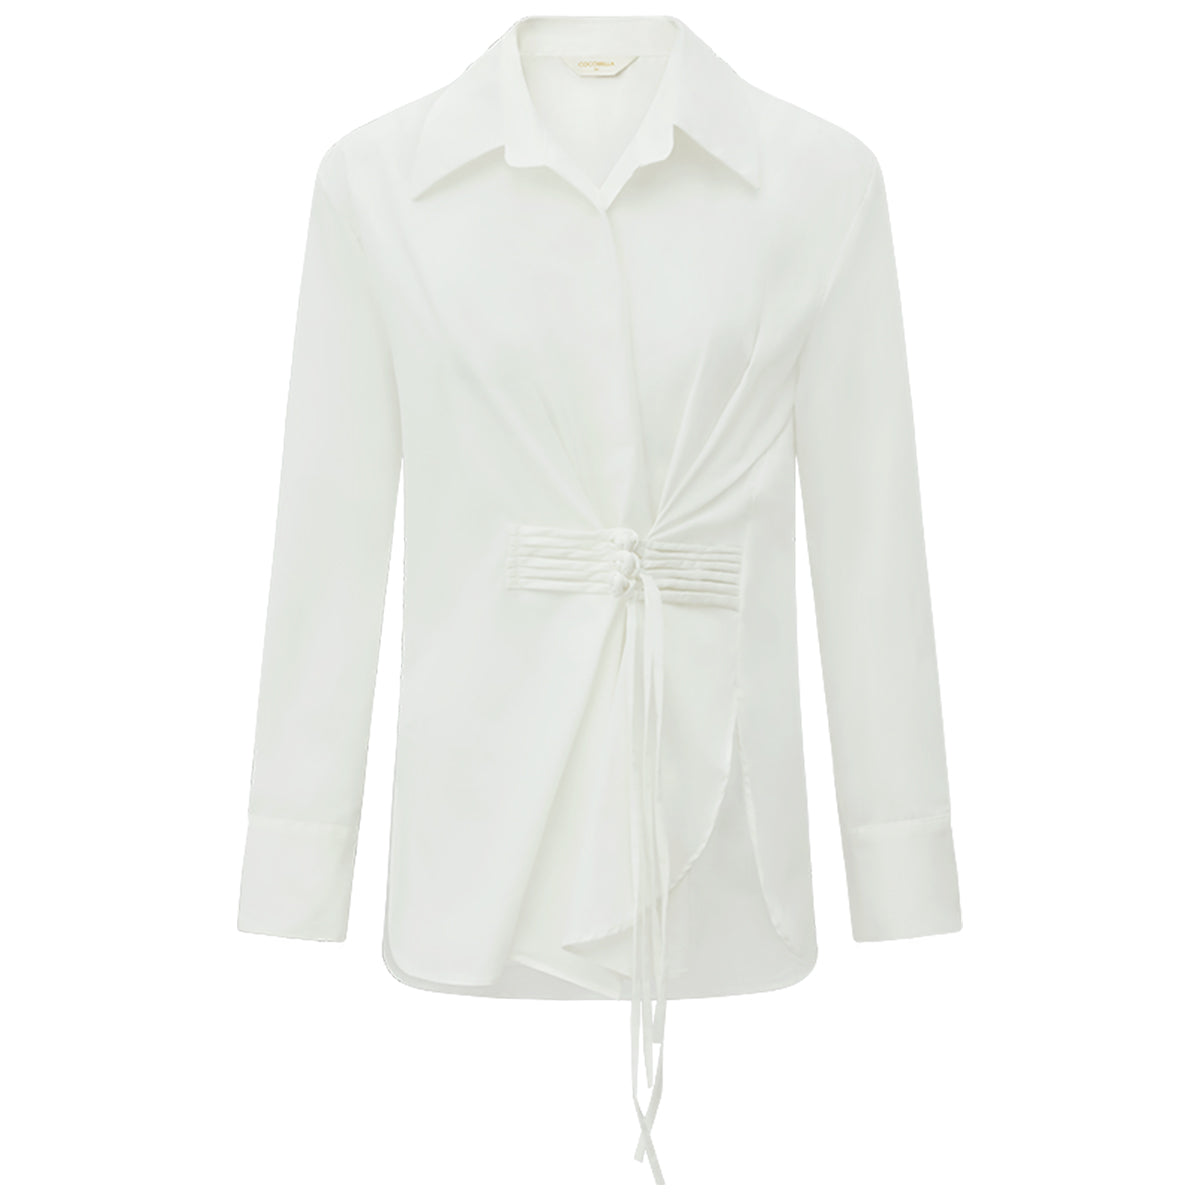 suave-asymmetrical-hem-knot-buckled-white-shirt_all_white_4.jpg